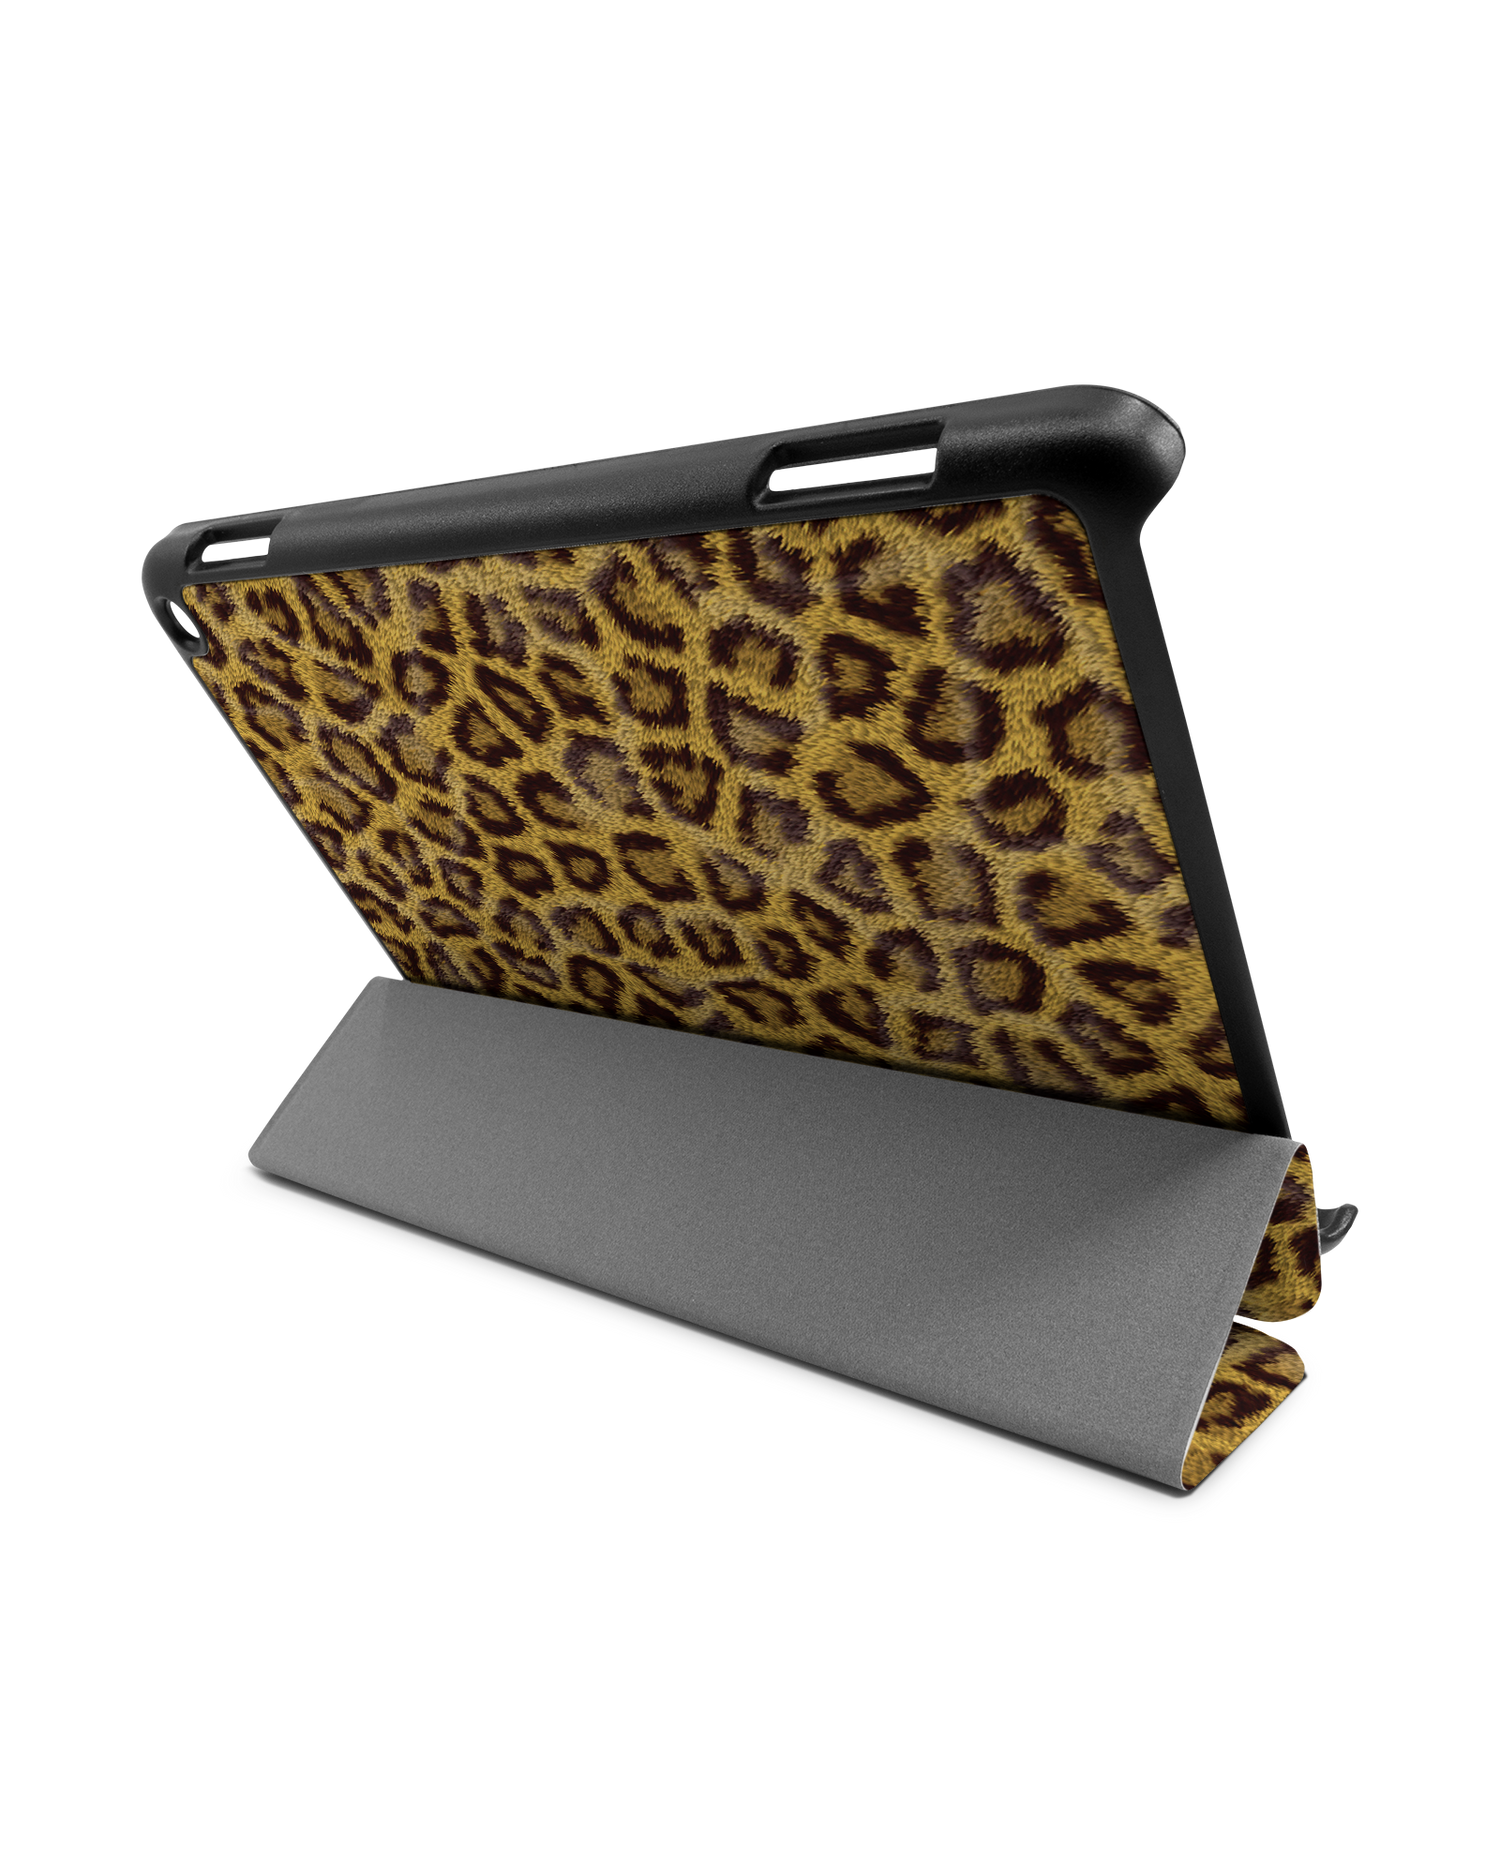 Leopard Skin Tablet Smart Case für Amazon Fire HD 8 (2022), Amazon Fire HD 8 Plus (2022), Amazon Fire HD 8 (2020), Amazon Fire HD 8 Plus (2020): Aufgestellt im Querformat